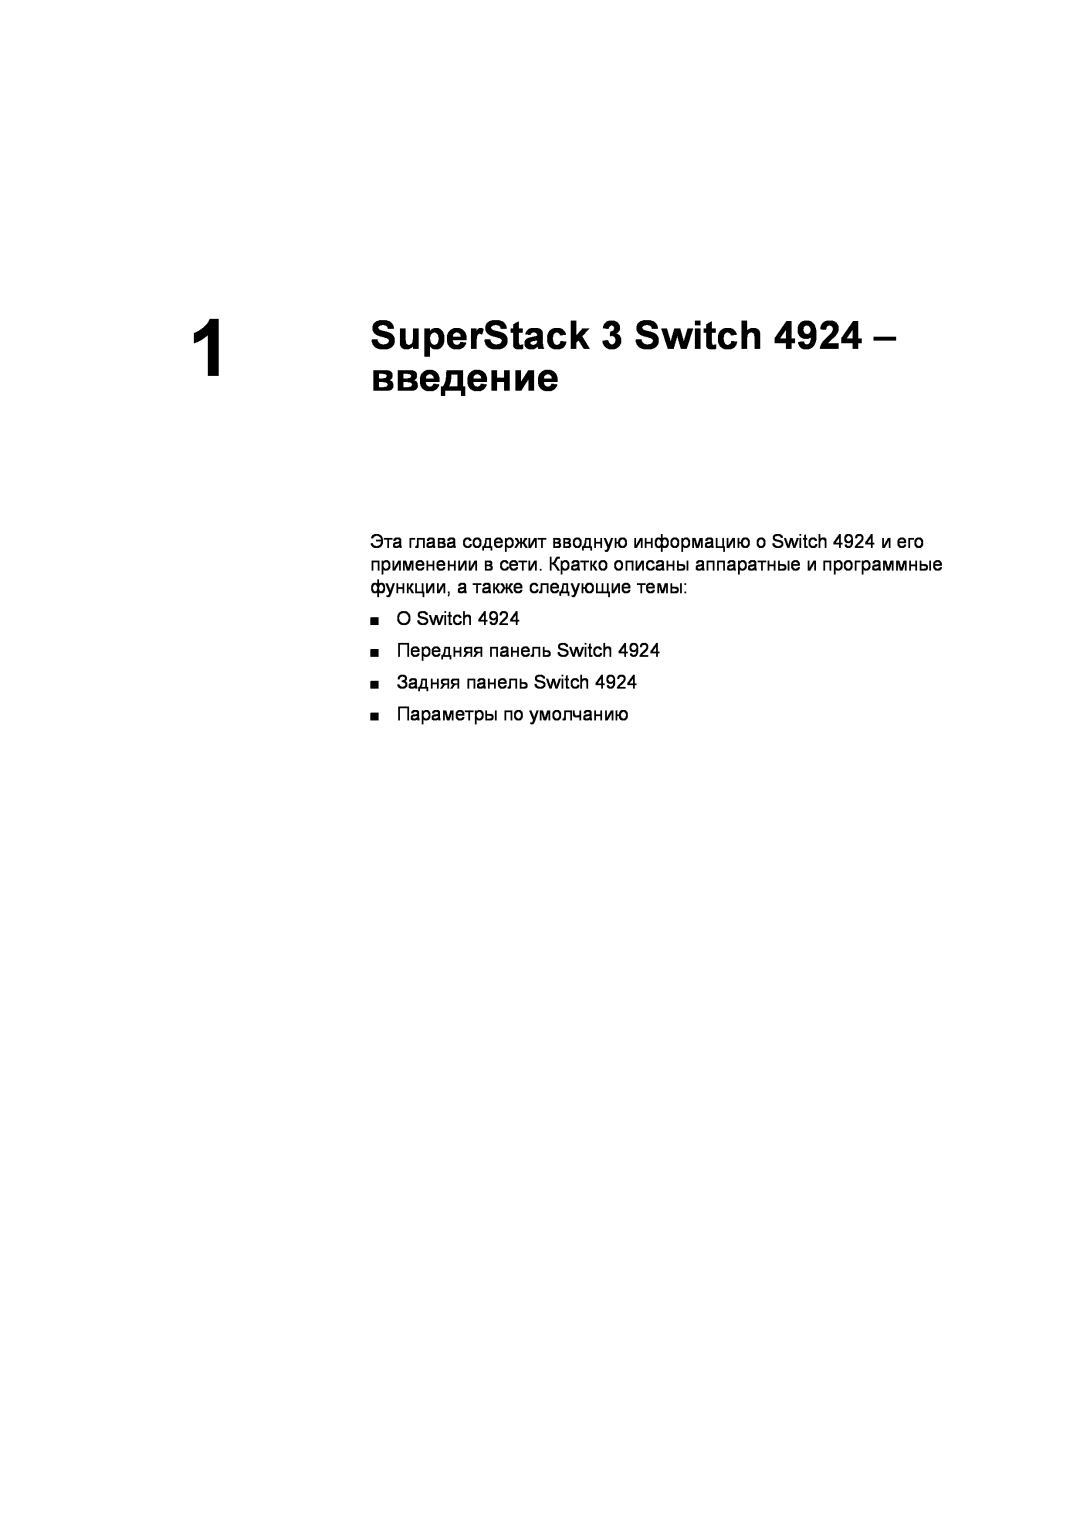 3Com 3C17701 SuperStack 3 Switch, введение, О Switch Передняя панель Switch Задняя панель Switch, Параметры по умолчанию 